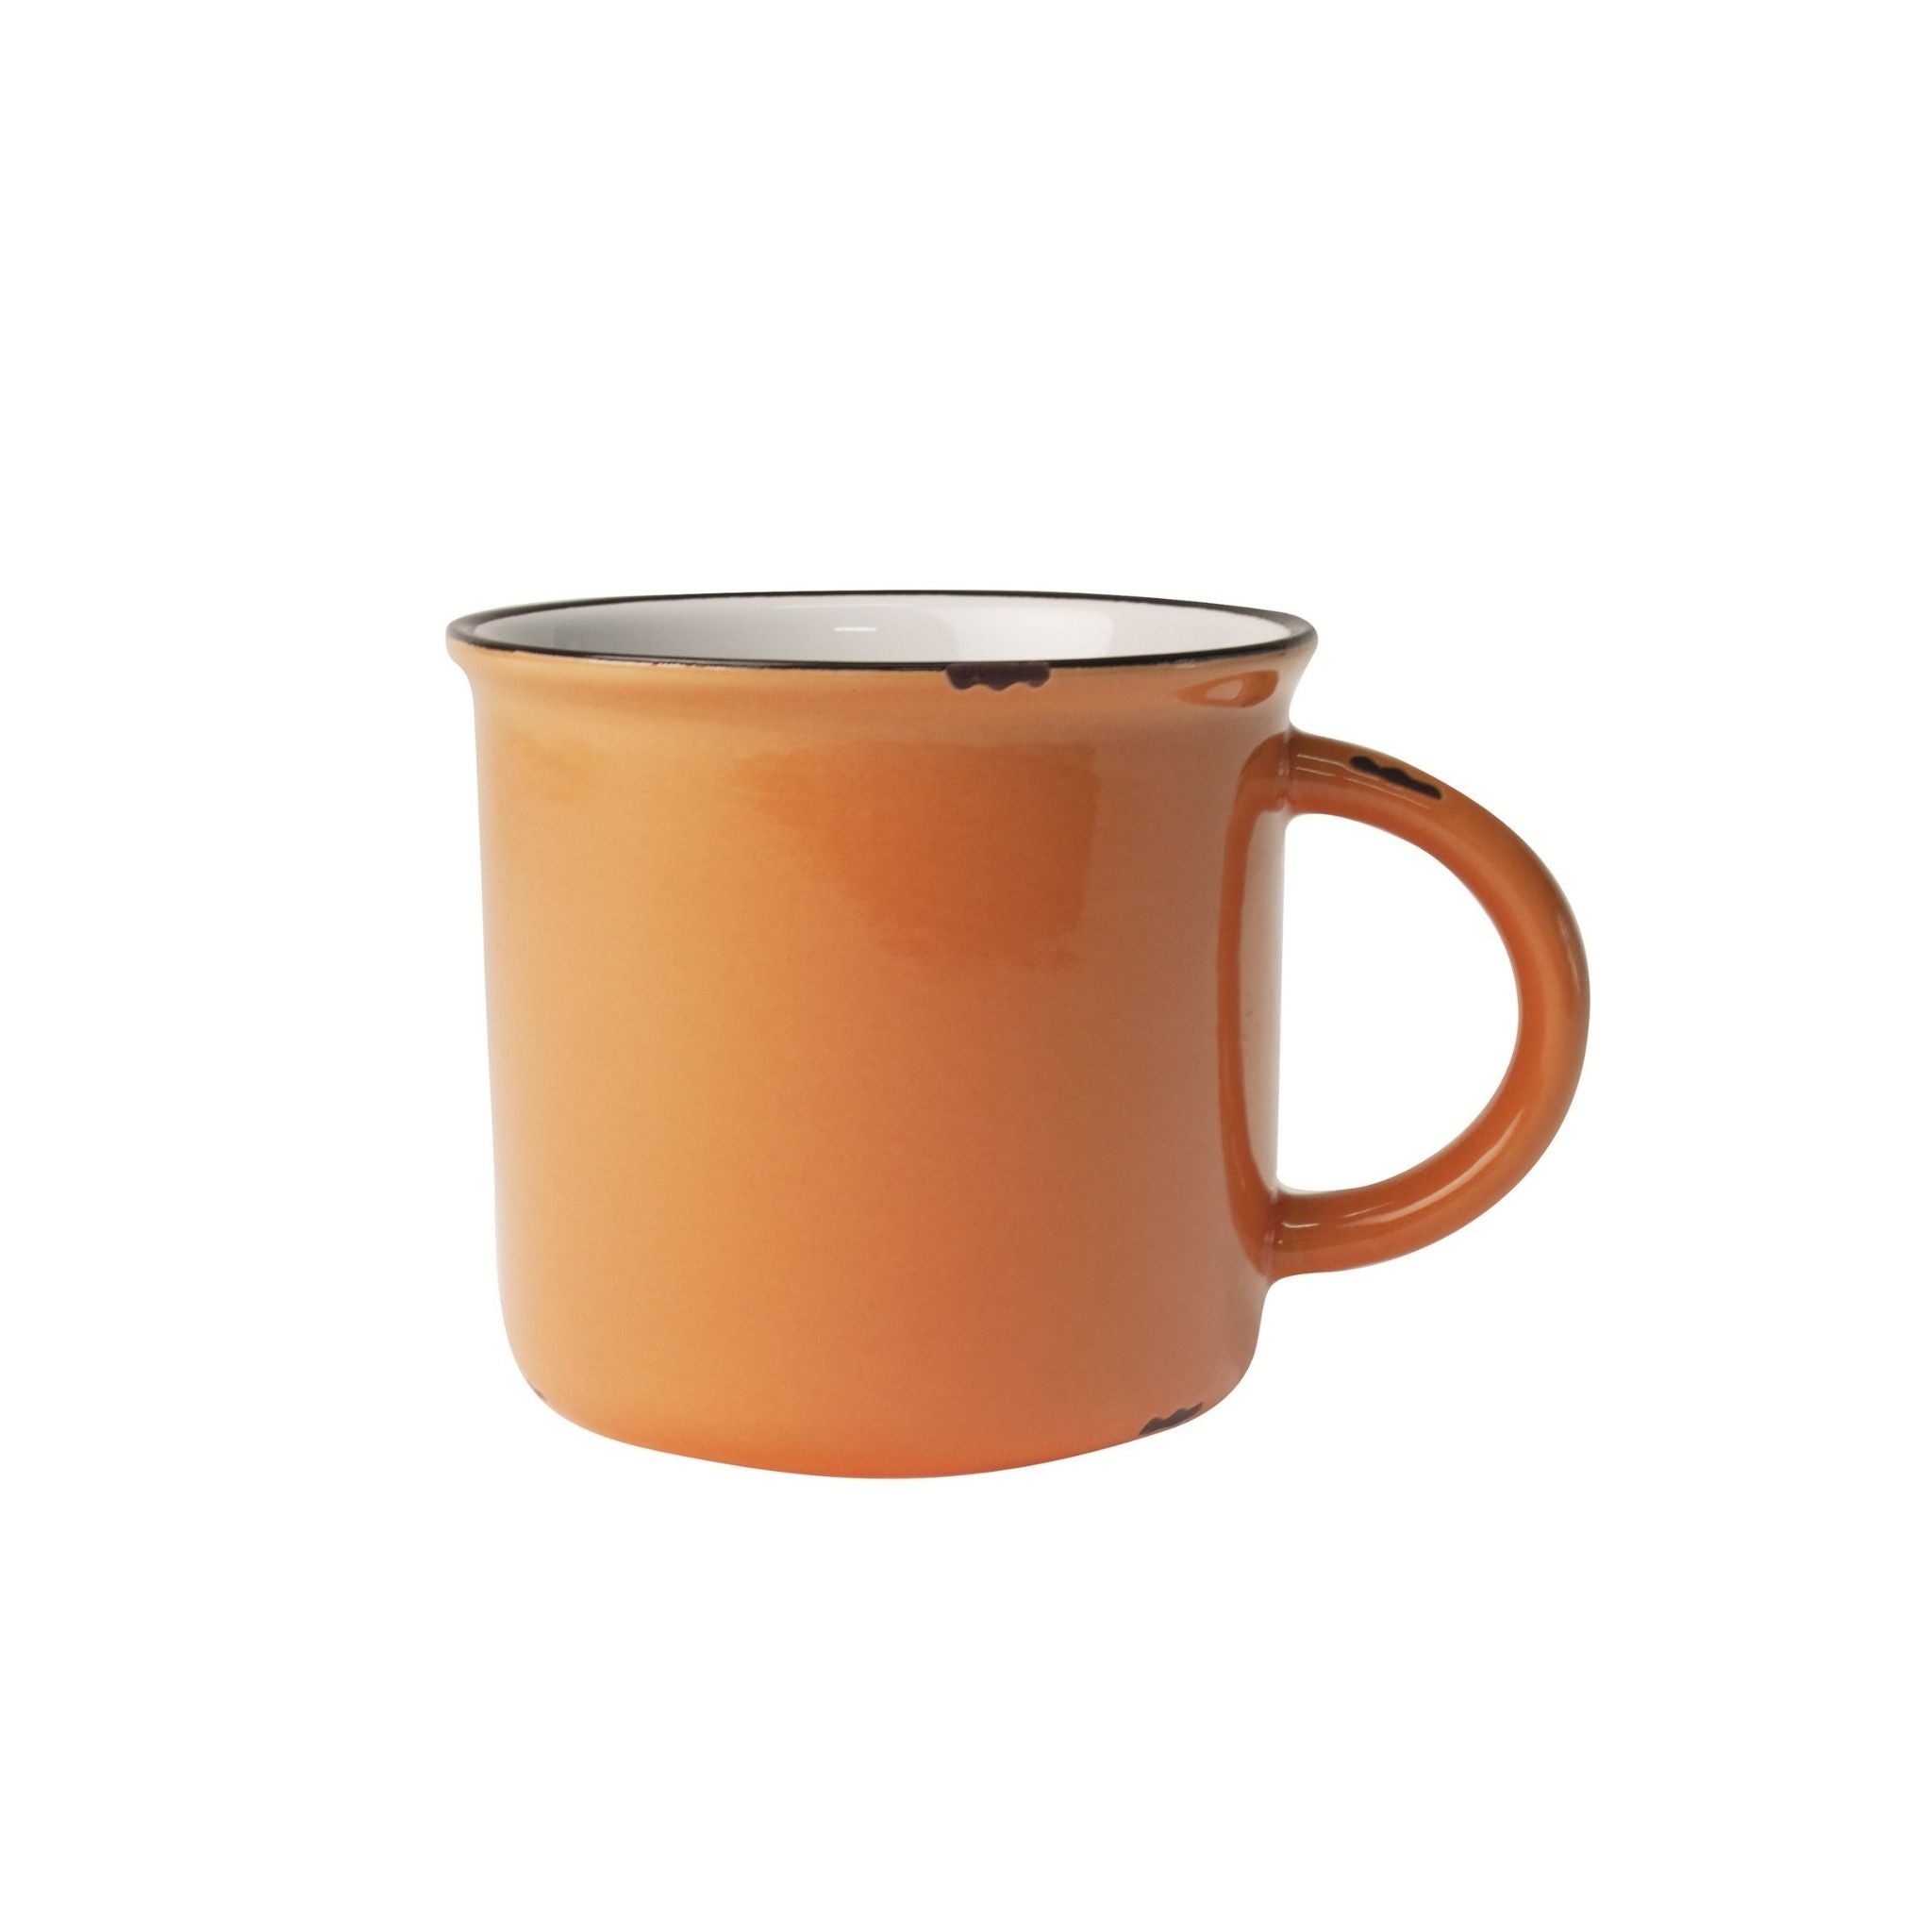 Tinware Mug - Valley Variety